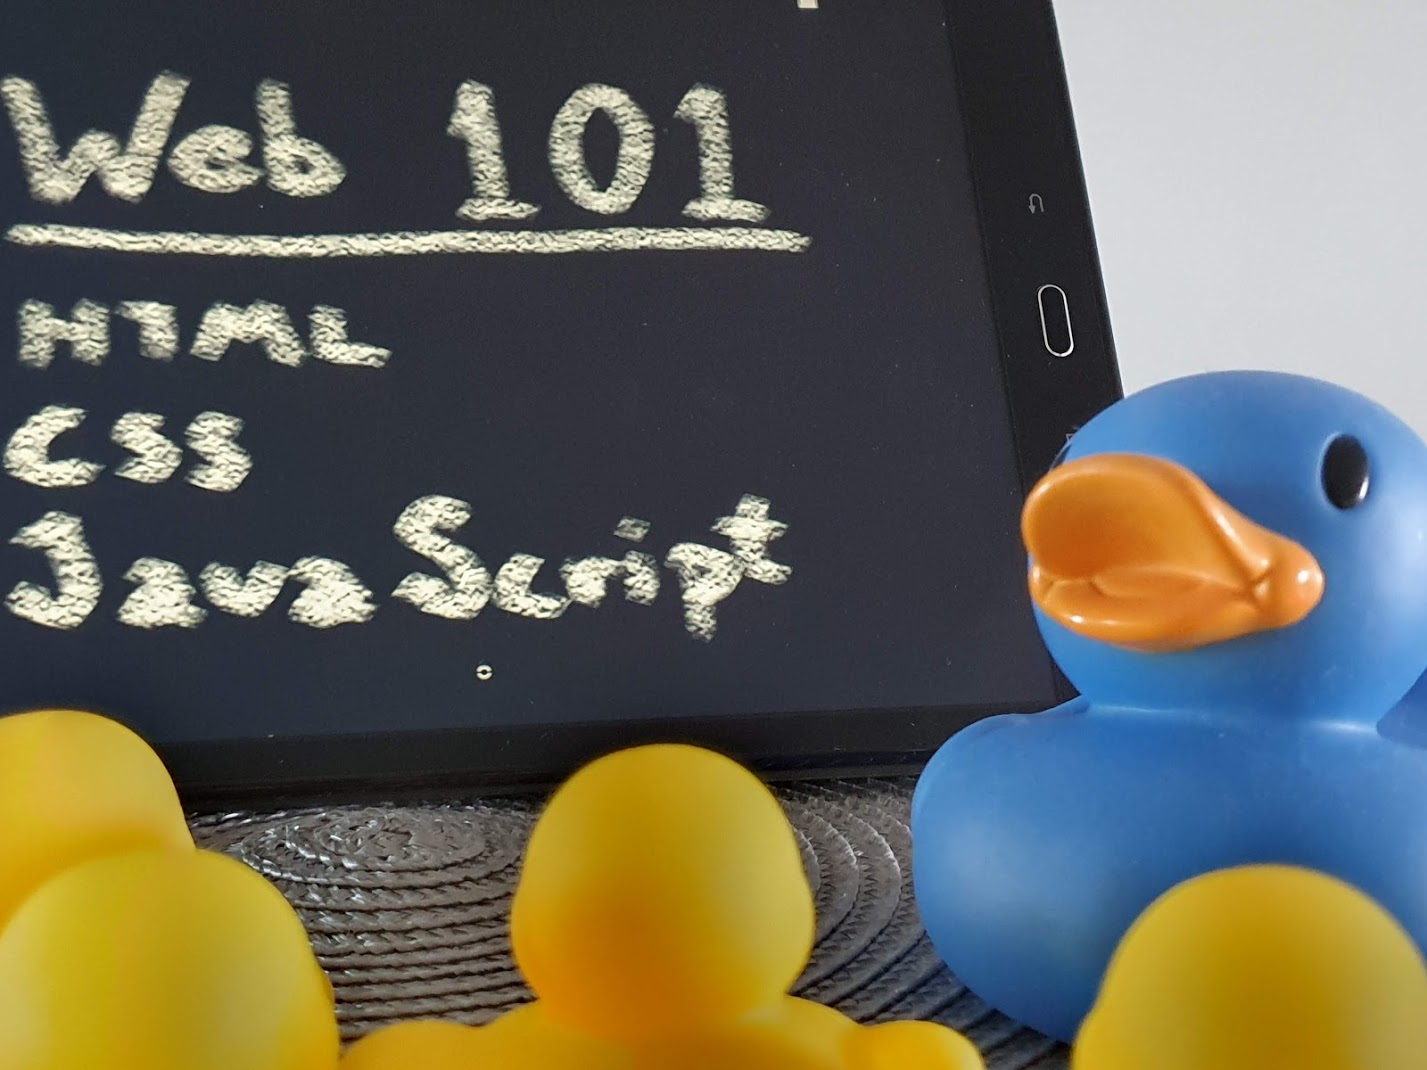 A big blue rubber duck teaching web development to smaller yellow rubber ducks